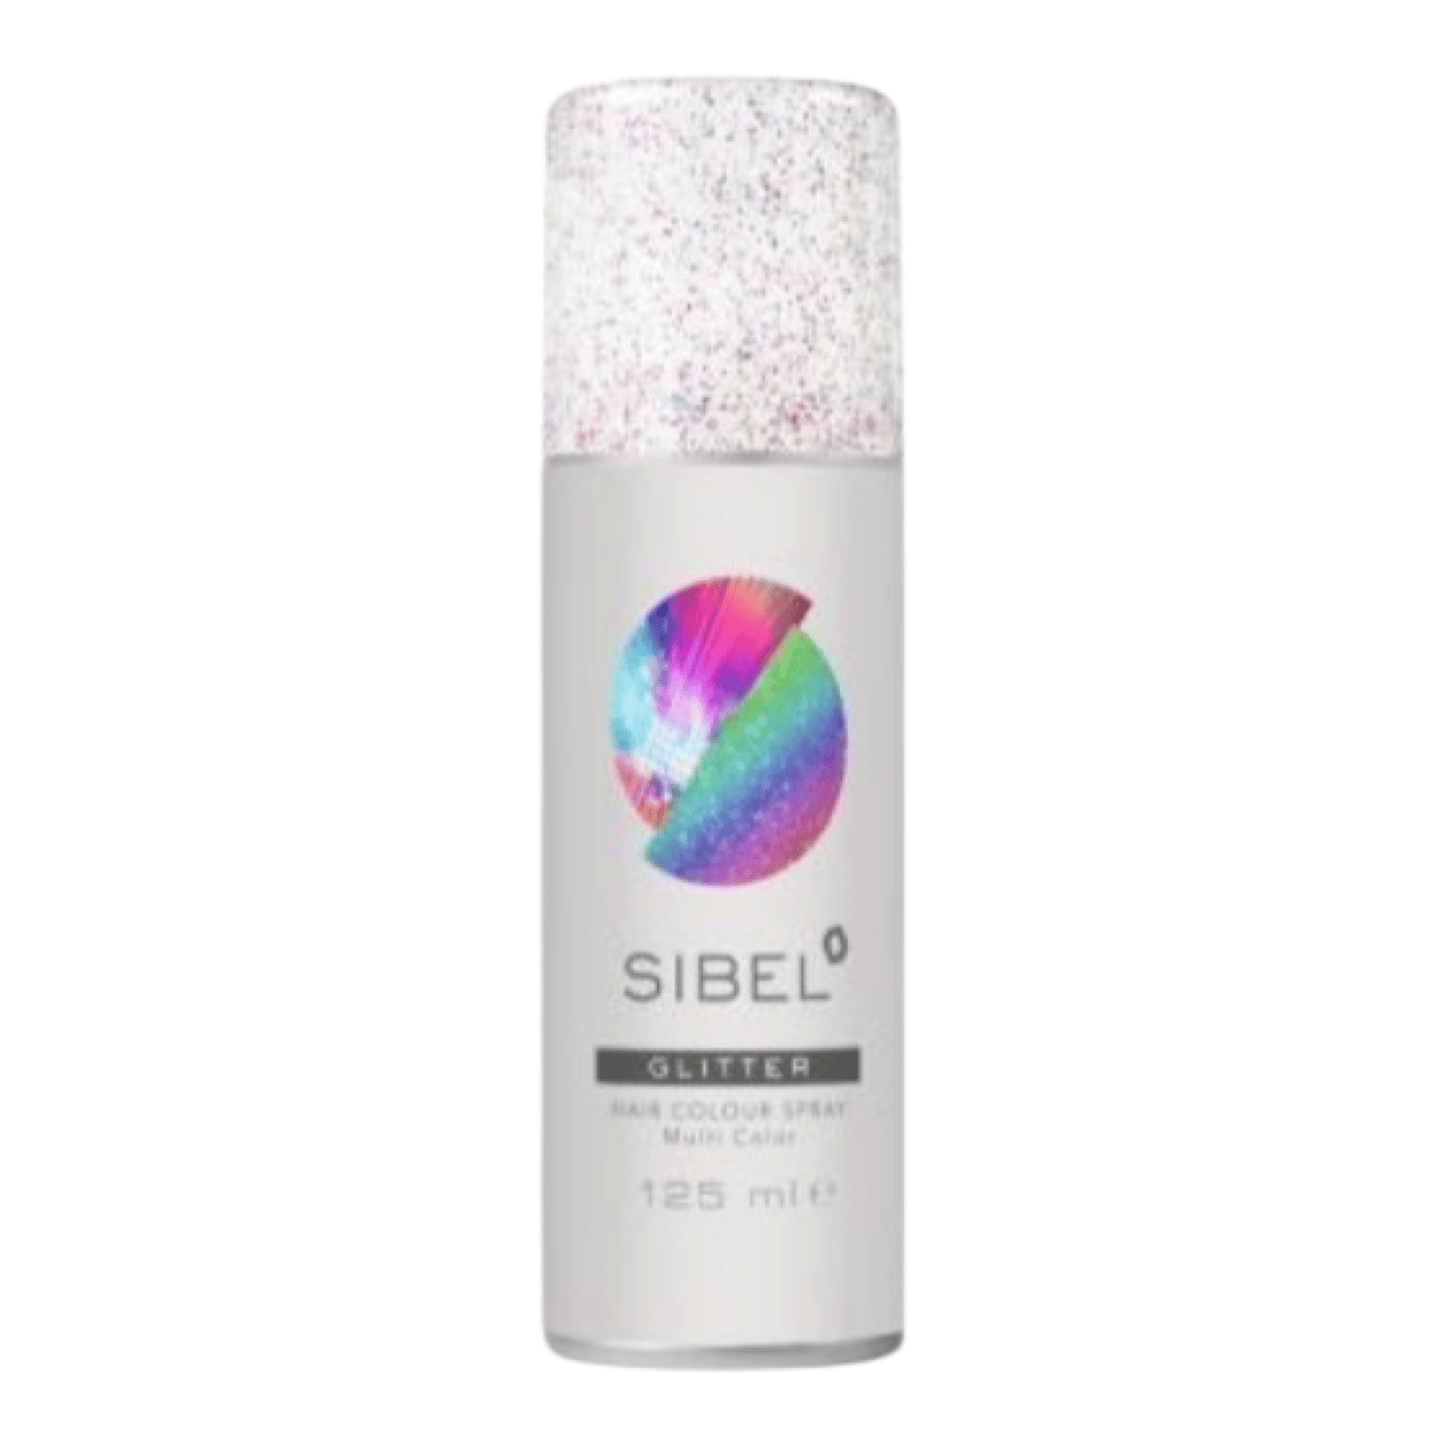 Sibel - color spray Multi glimmer 125 ml - Merle og Wilde